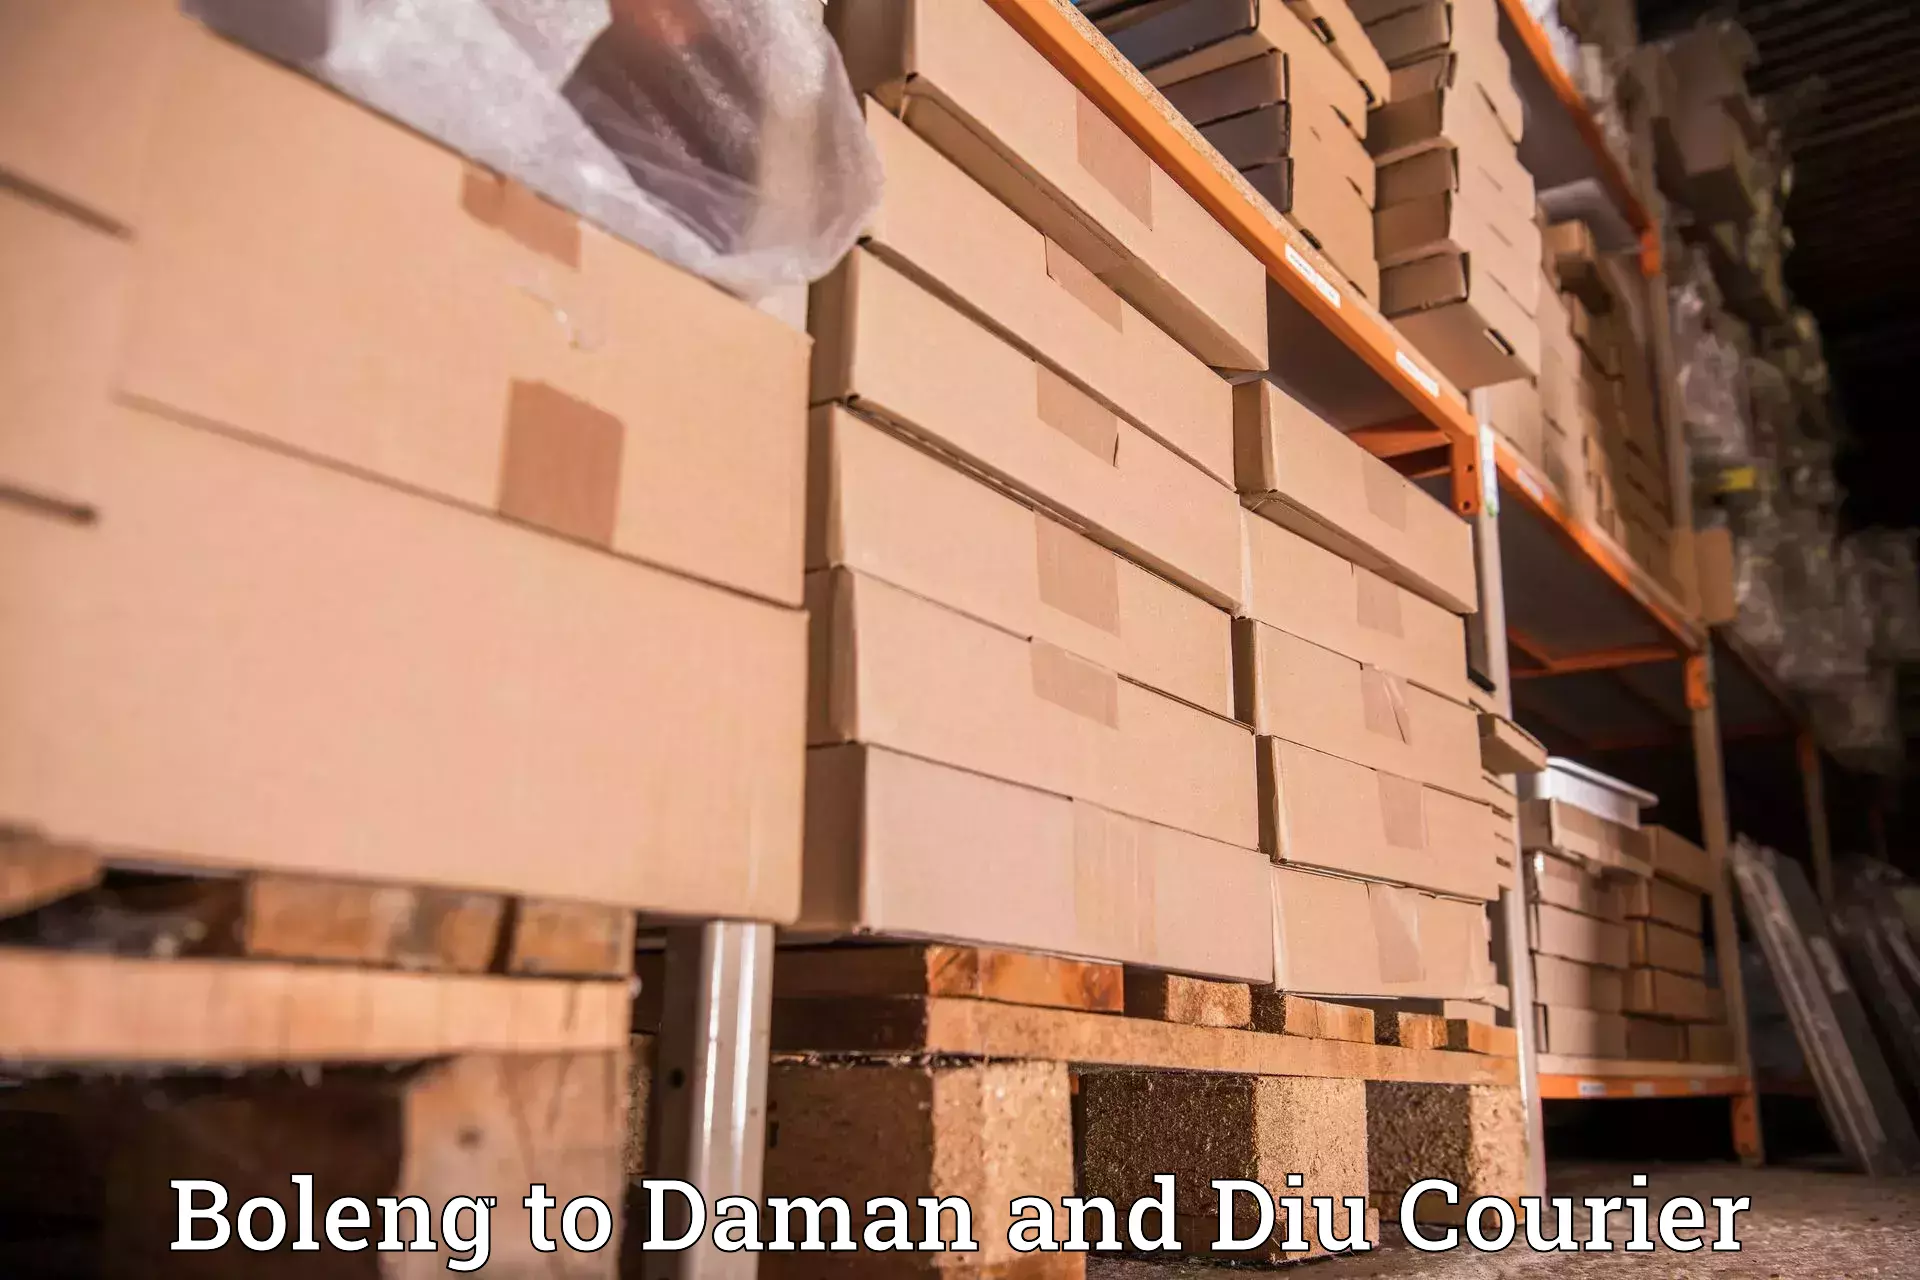 High-capacity parcel service Boleng to Daman and Diu